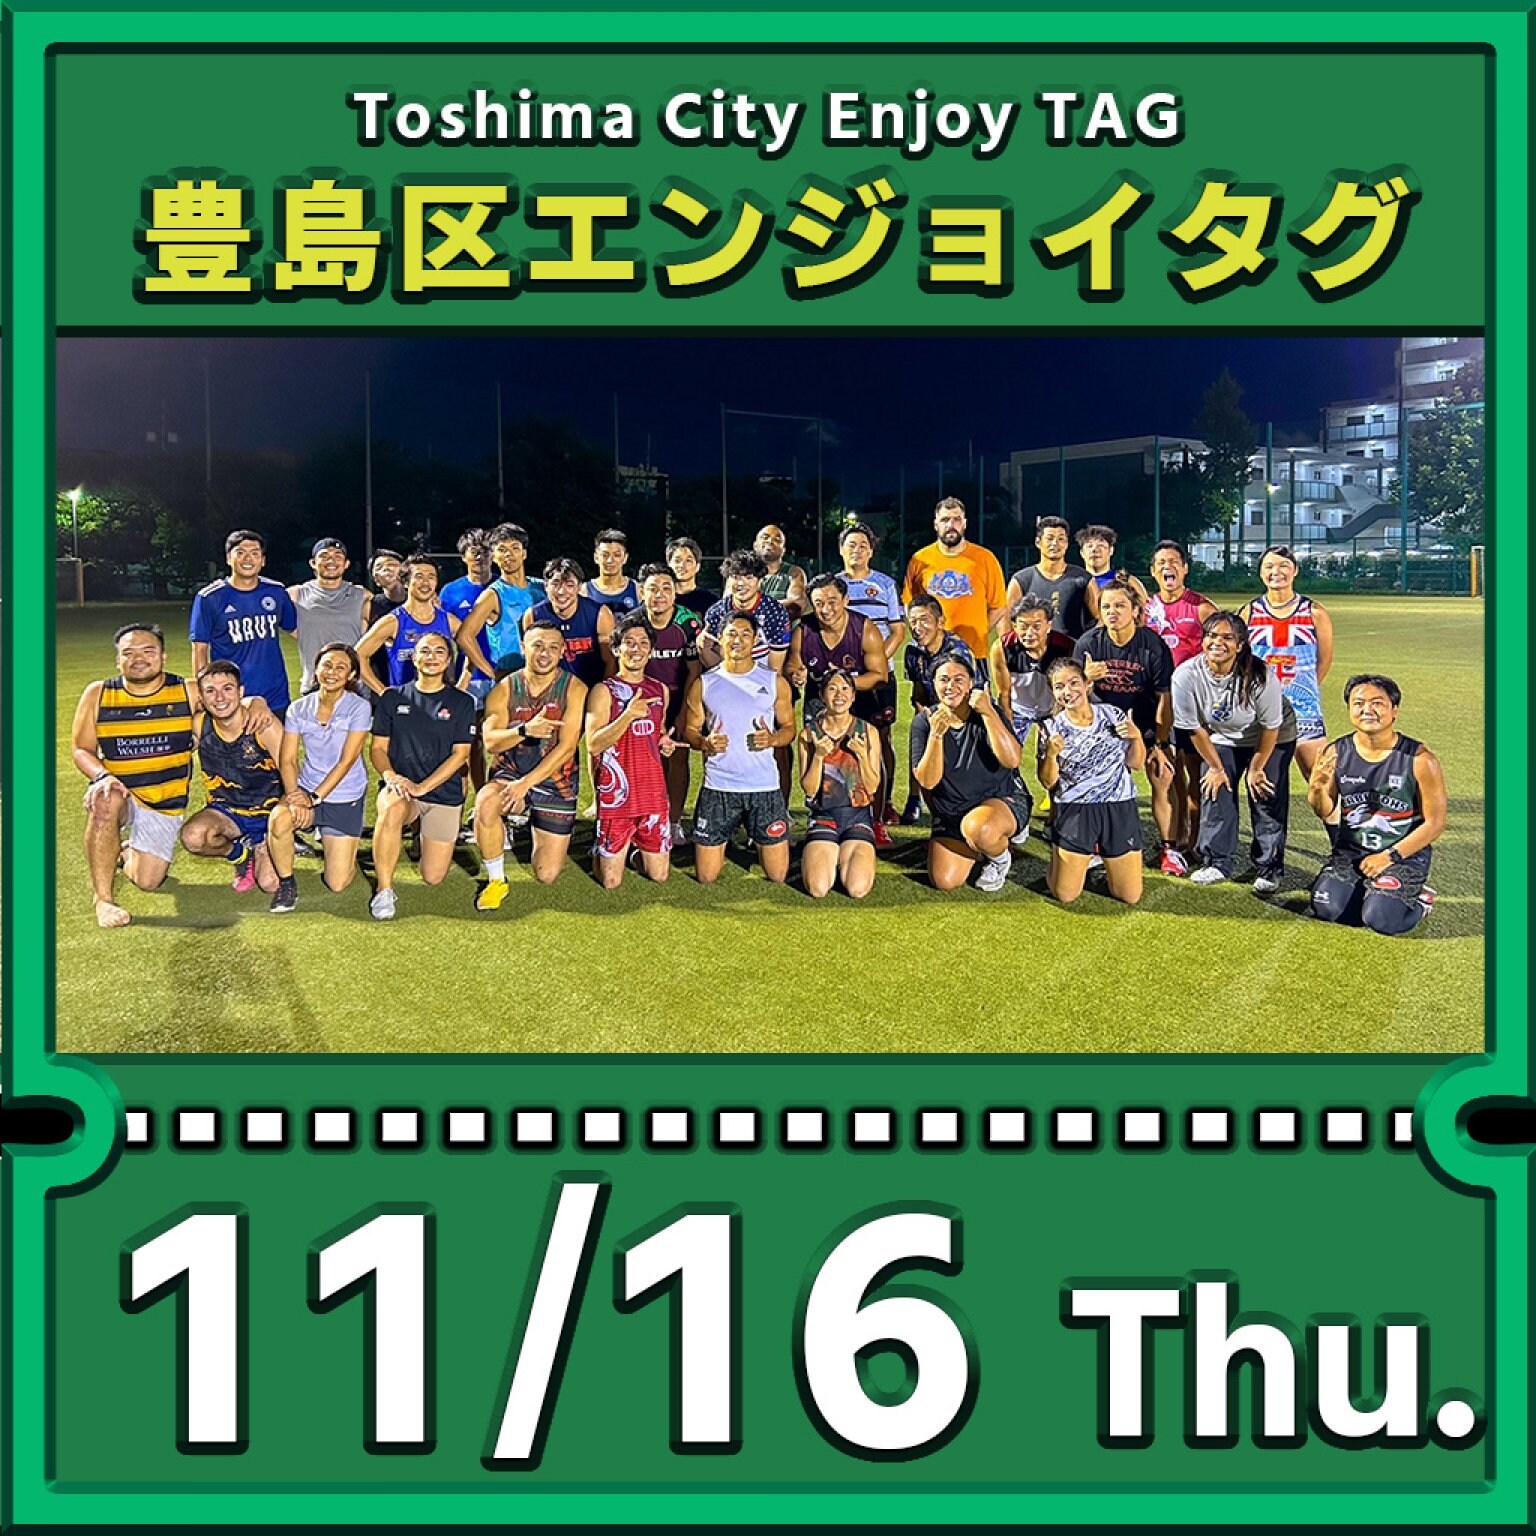 豊島区エンジョイタグ参加費・11月16日分（Toshima City Enjoy Tag Activity on 16th Nov.） 